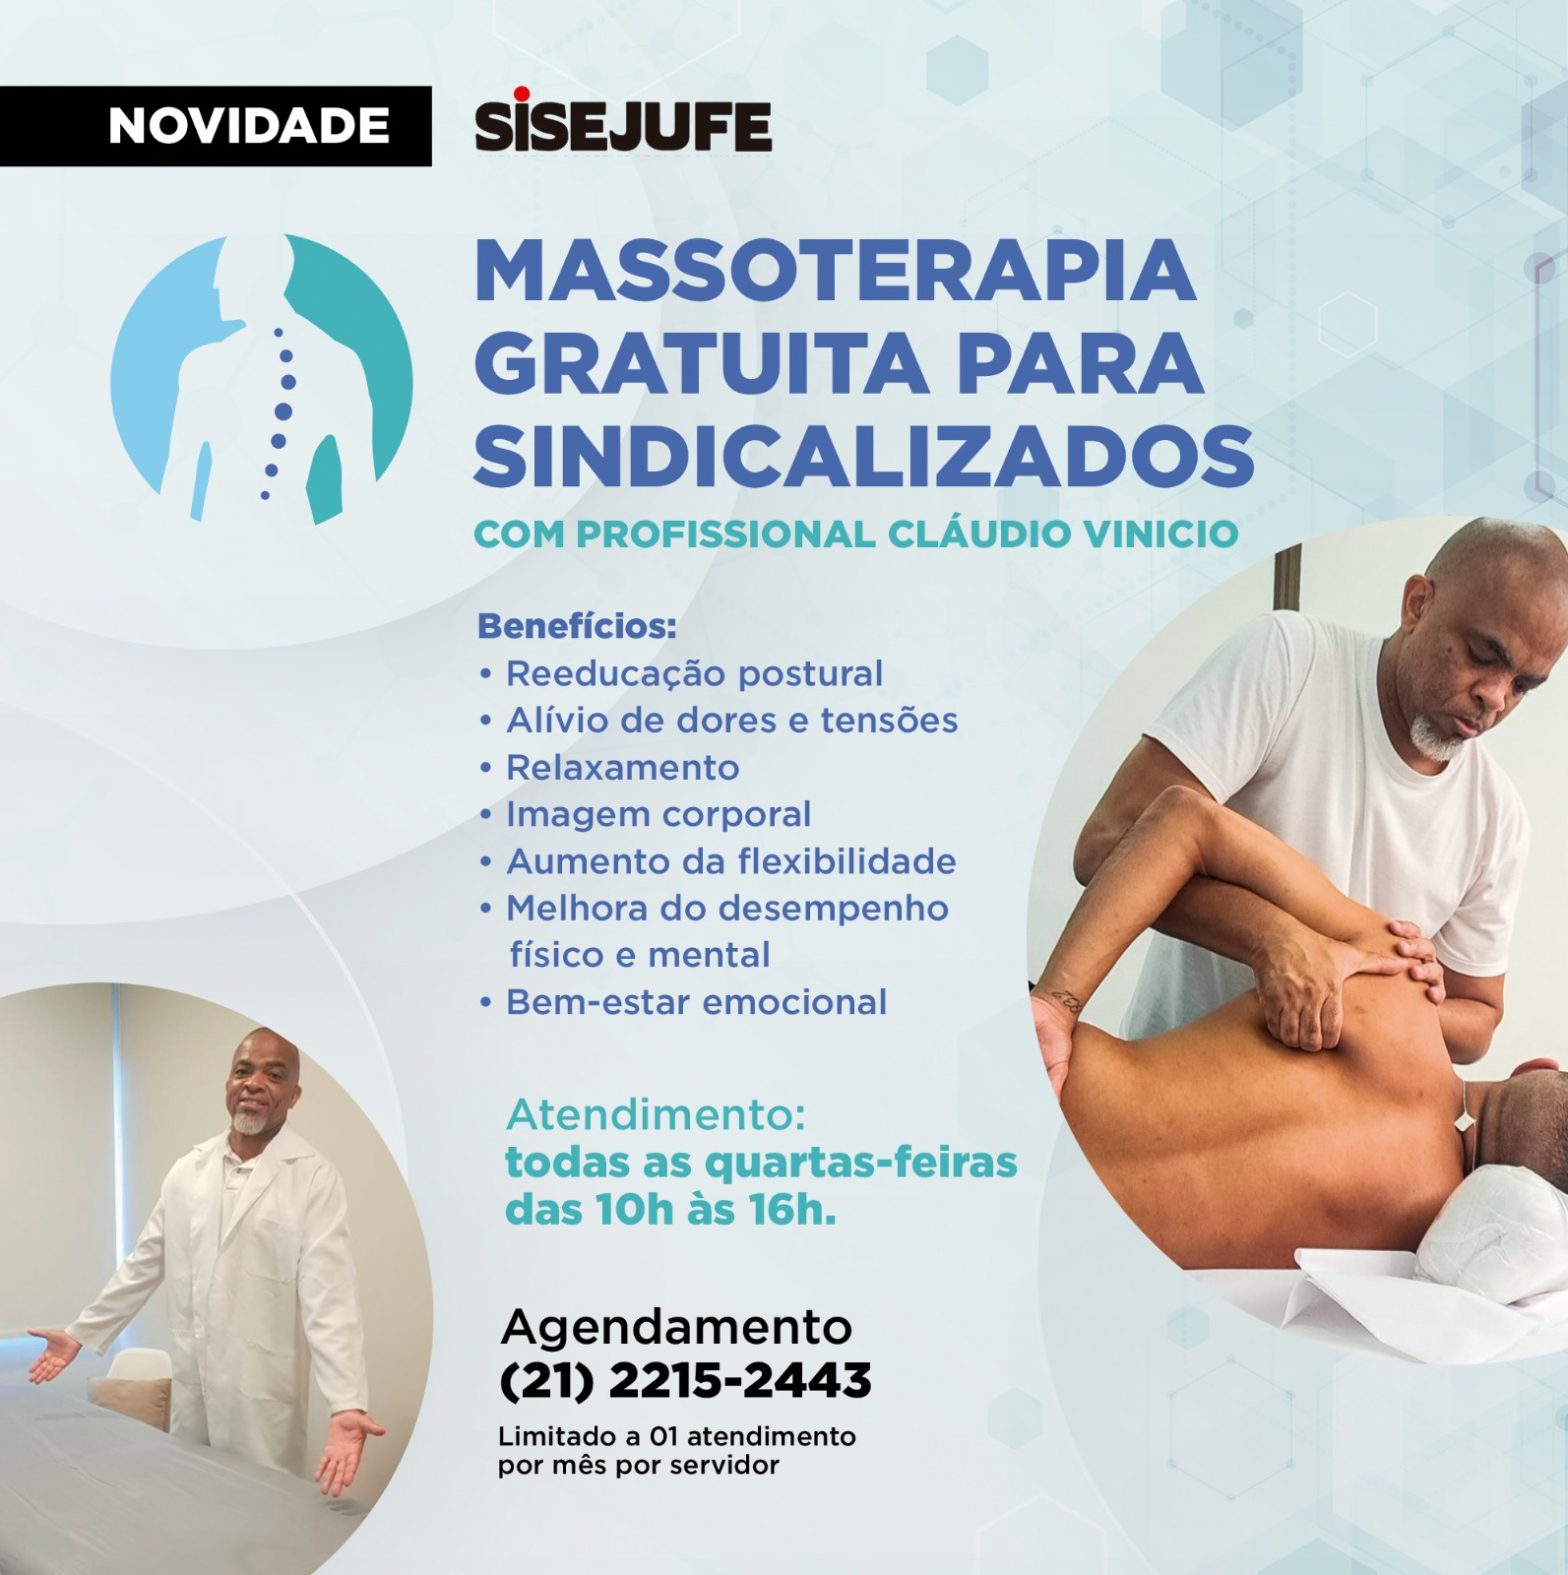 Sisejufe abrirá inscrições, a partir de segunda (20/3), para massoterapia gratuita, SISEJUFE